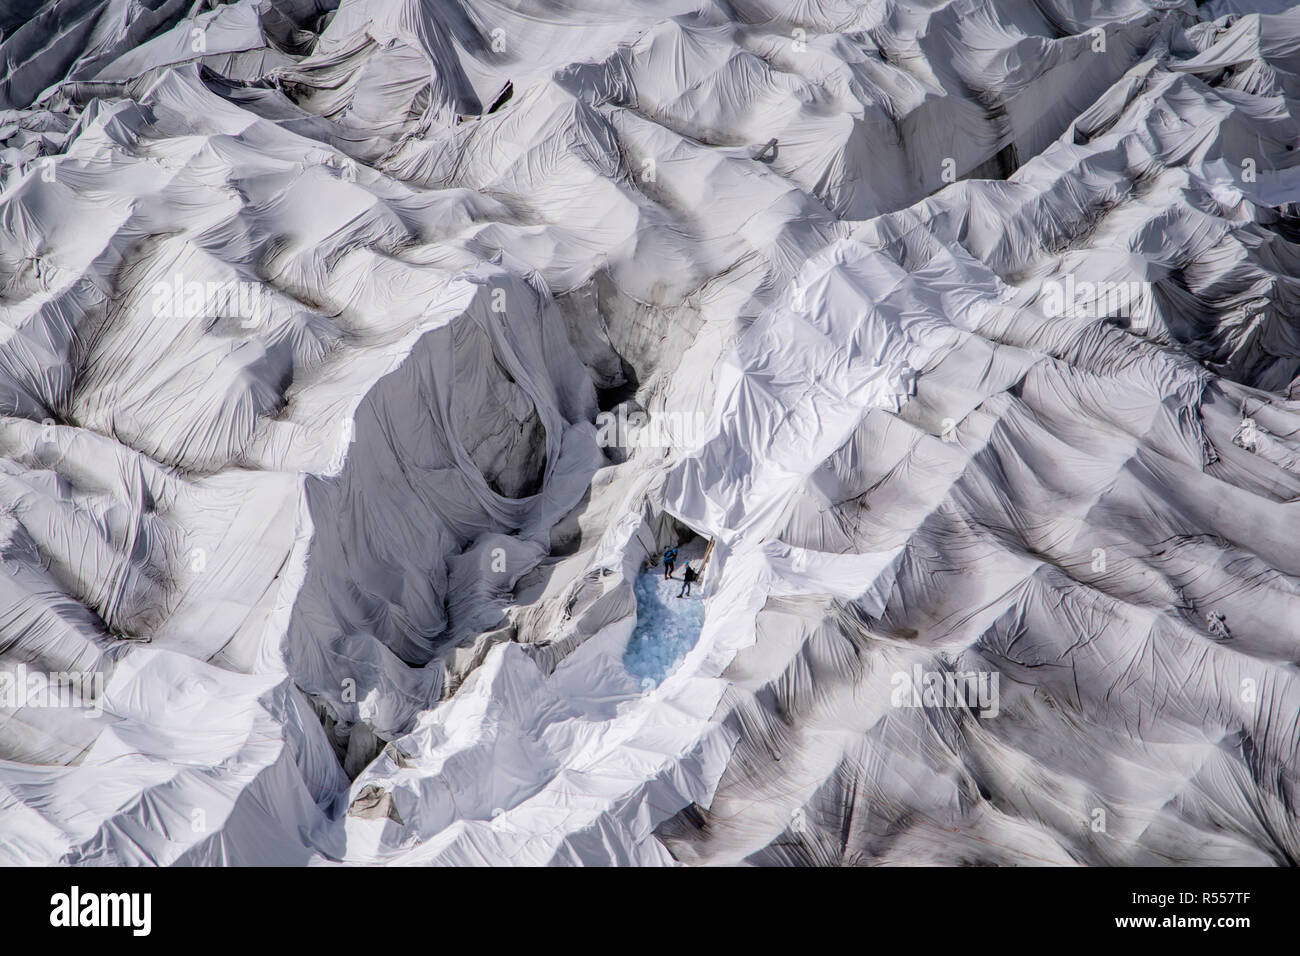 Due persone possono essere viste all'ingresso di una grotta di ghiaccio del ghiacciaio alla foce del Ghiacciaio del Rodano in Svizzera. La grotta di ghiaccio e il ghiacciaio circostante sono coperti ogni anno con enormi fogli di coperte di feltro per rallentare l'inevitabile fusione del ghiacciaio a causa del clima più caldo. Un'attrazione turistica popolare dal 1870, il ghiacciaio sta scomparendo velocemente. Con temperature medie più elevate e mancanza di precipitazioni, il ghiacciaio del Rodano si sta riducendo drasticamente. Un inverno eccezionalmente innevato non è stato sufficiente per compensare l'estate estrema, che ha fatto perdere ai ghiacciai il 2.5% del loro volume, t Foto Stock